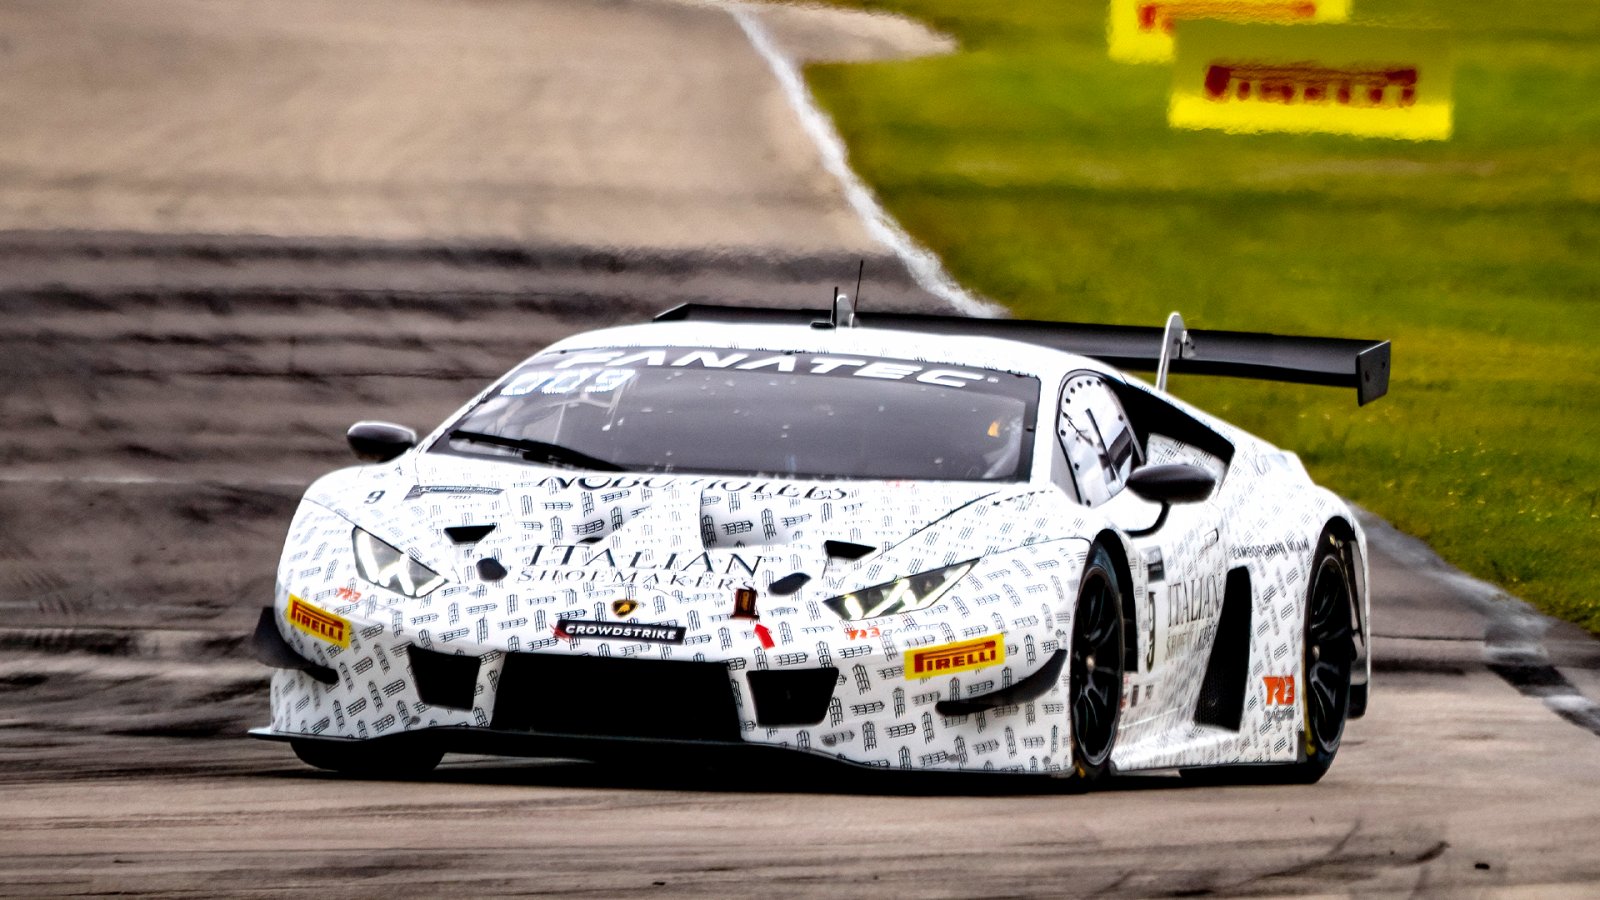 Lind (Lamborghini), Heylen (Porsche), Saada (Ferrari) Set Times for Final Sebring Practice